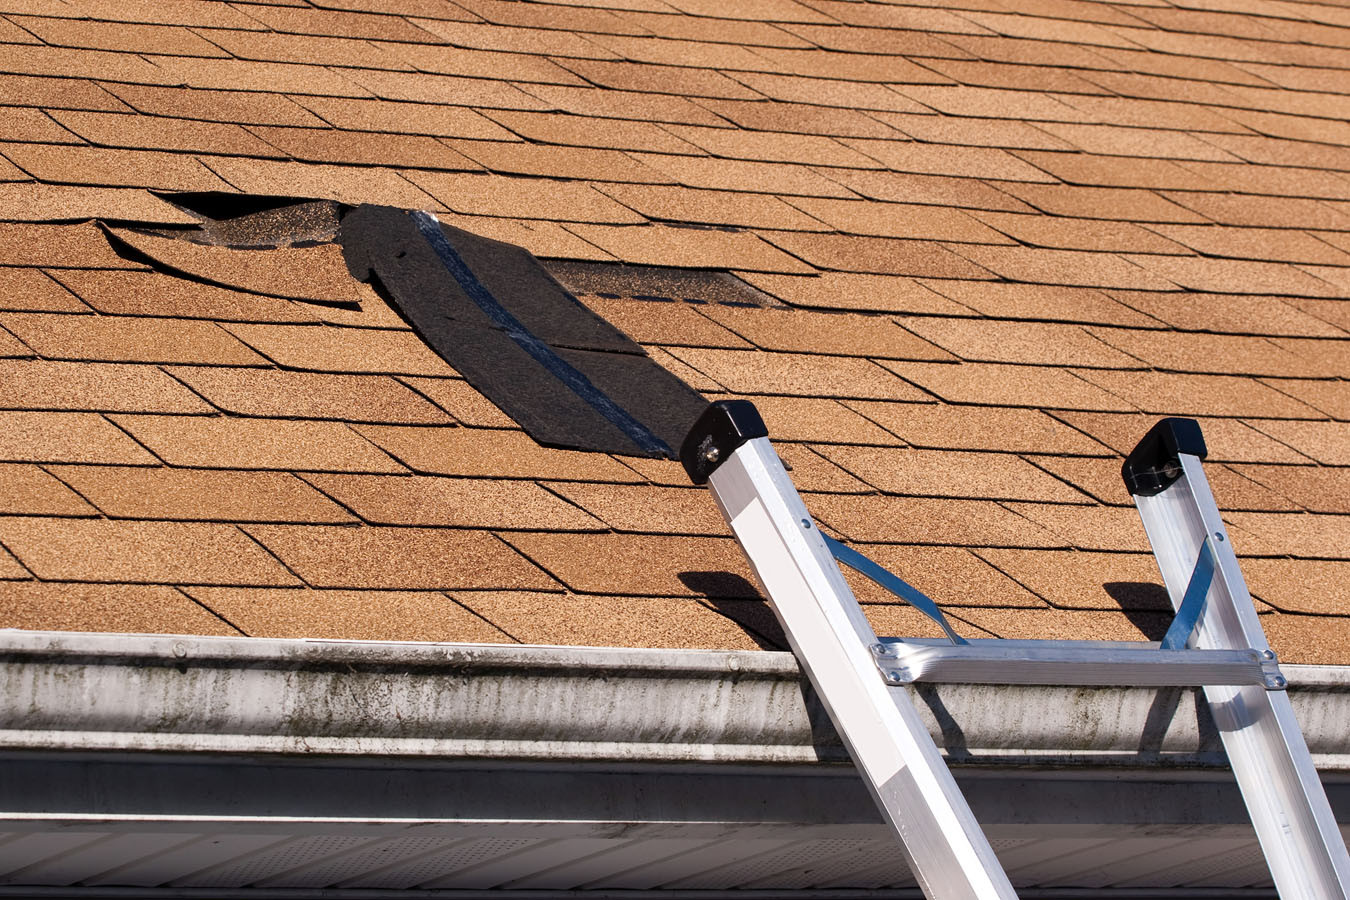 Damaged Roof Shingles Repair